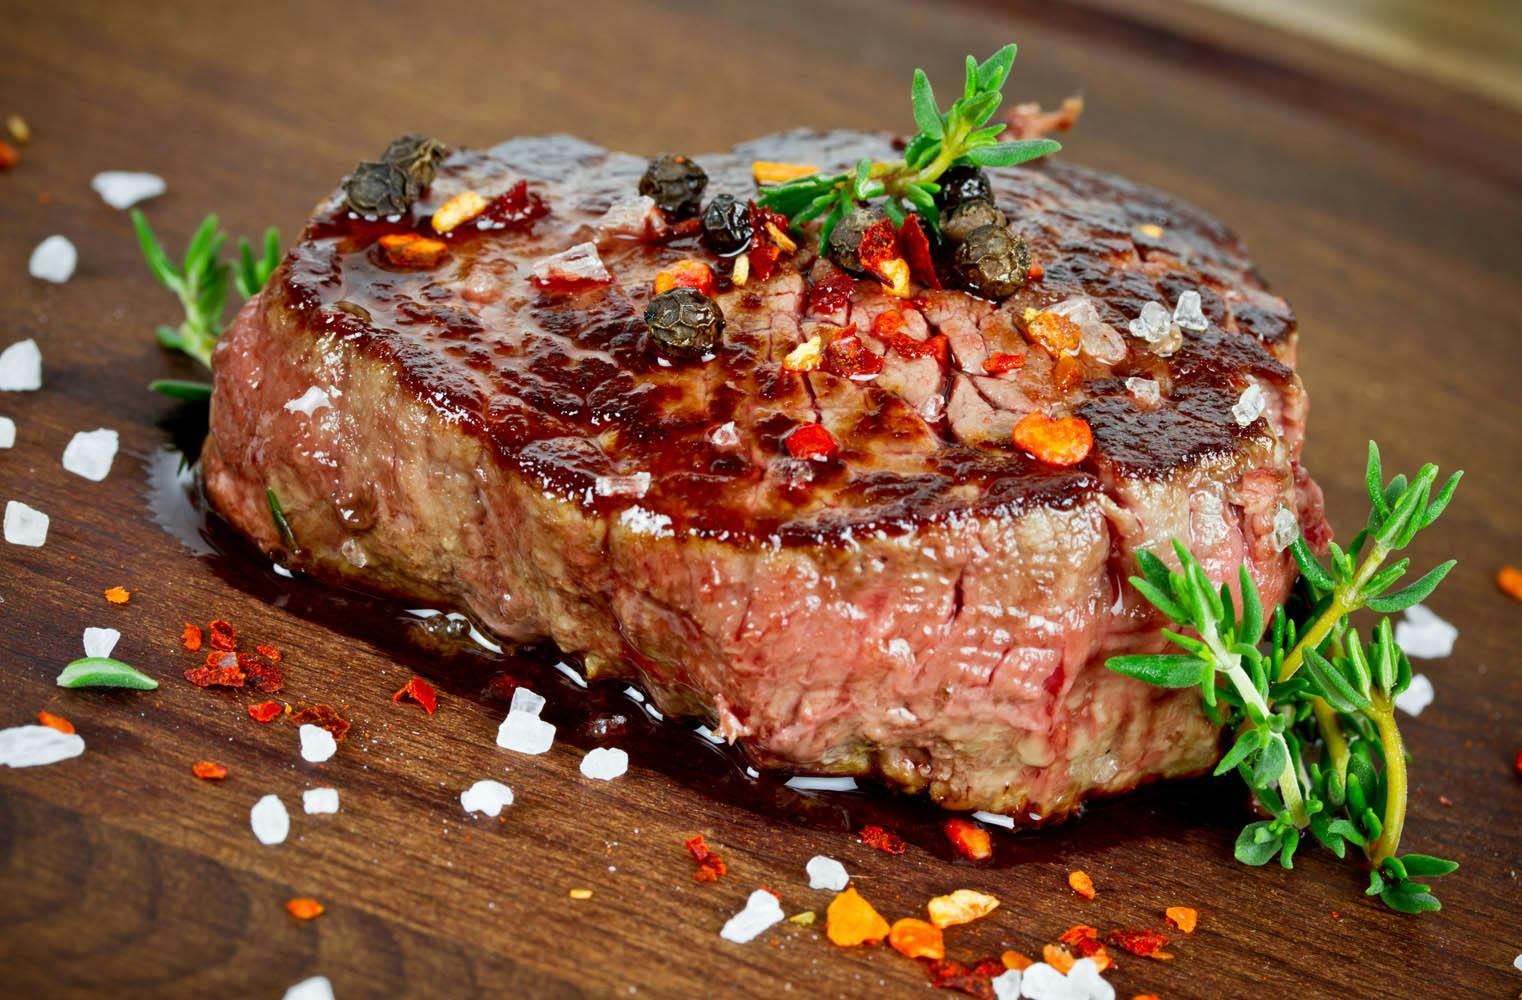 Steaks on Fire | Steakgrillkurs | dein perfektes Steak